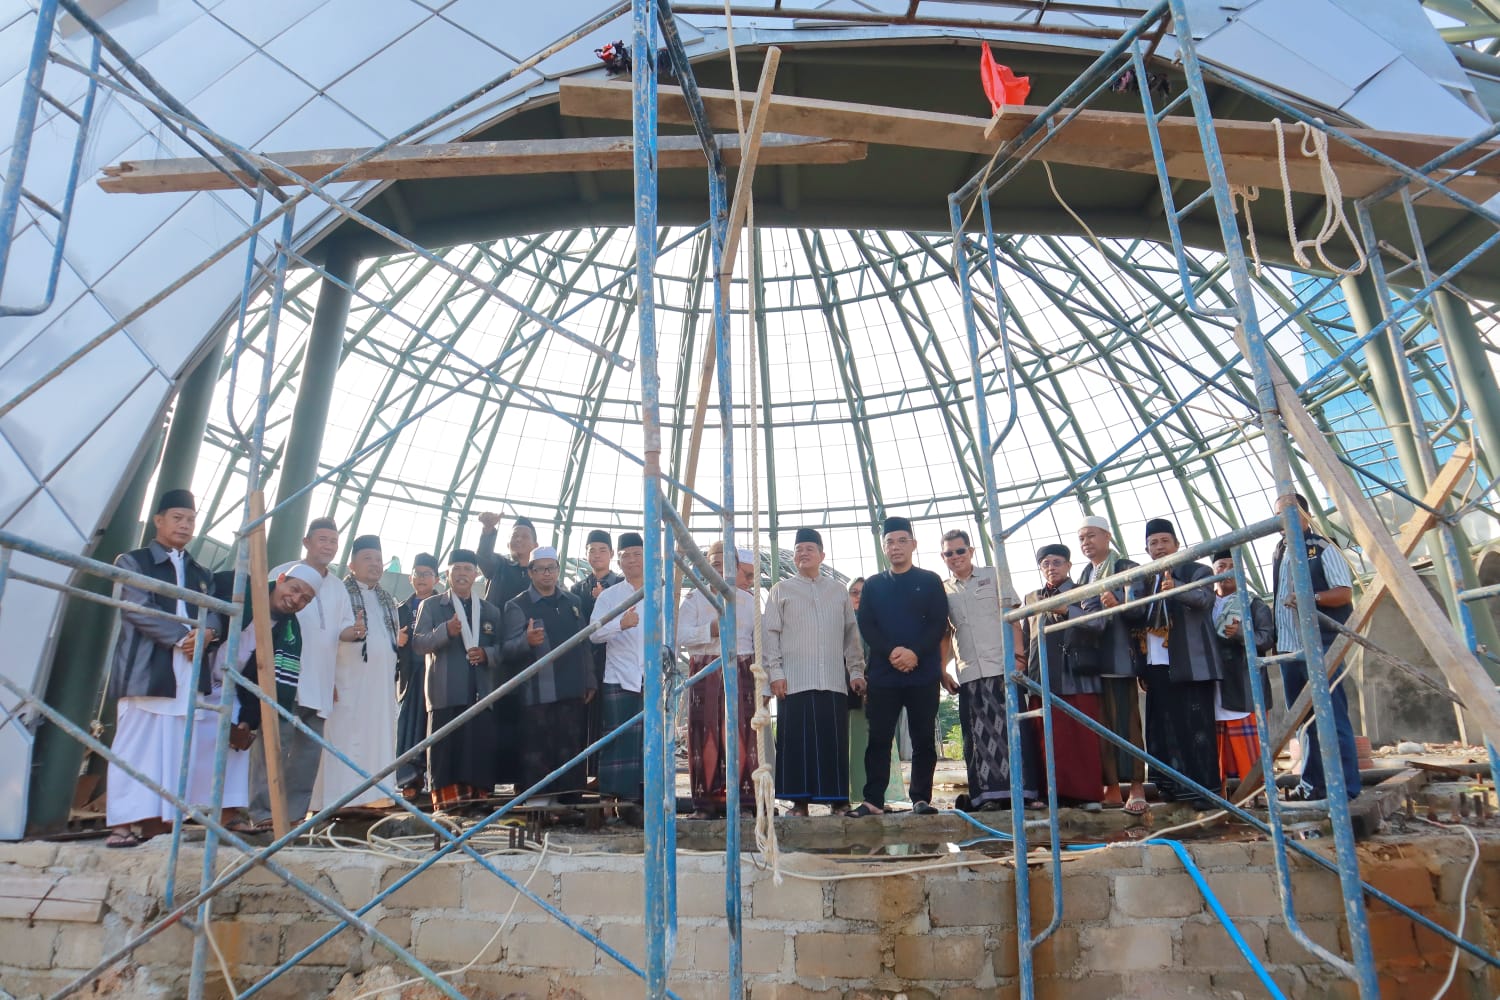 Sekda Mie Go dan DMI Pangkalpinang Cek Posisi Mimbar untuk Masjid Agung Kubah Timah. (Foto: Kupasonline.com)